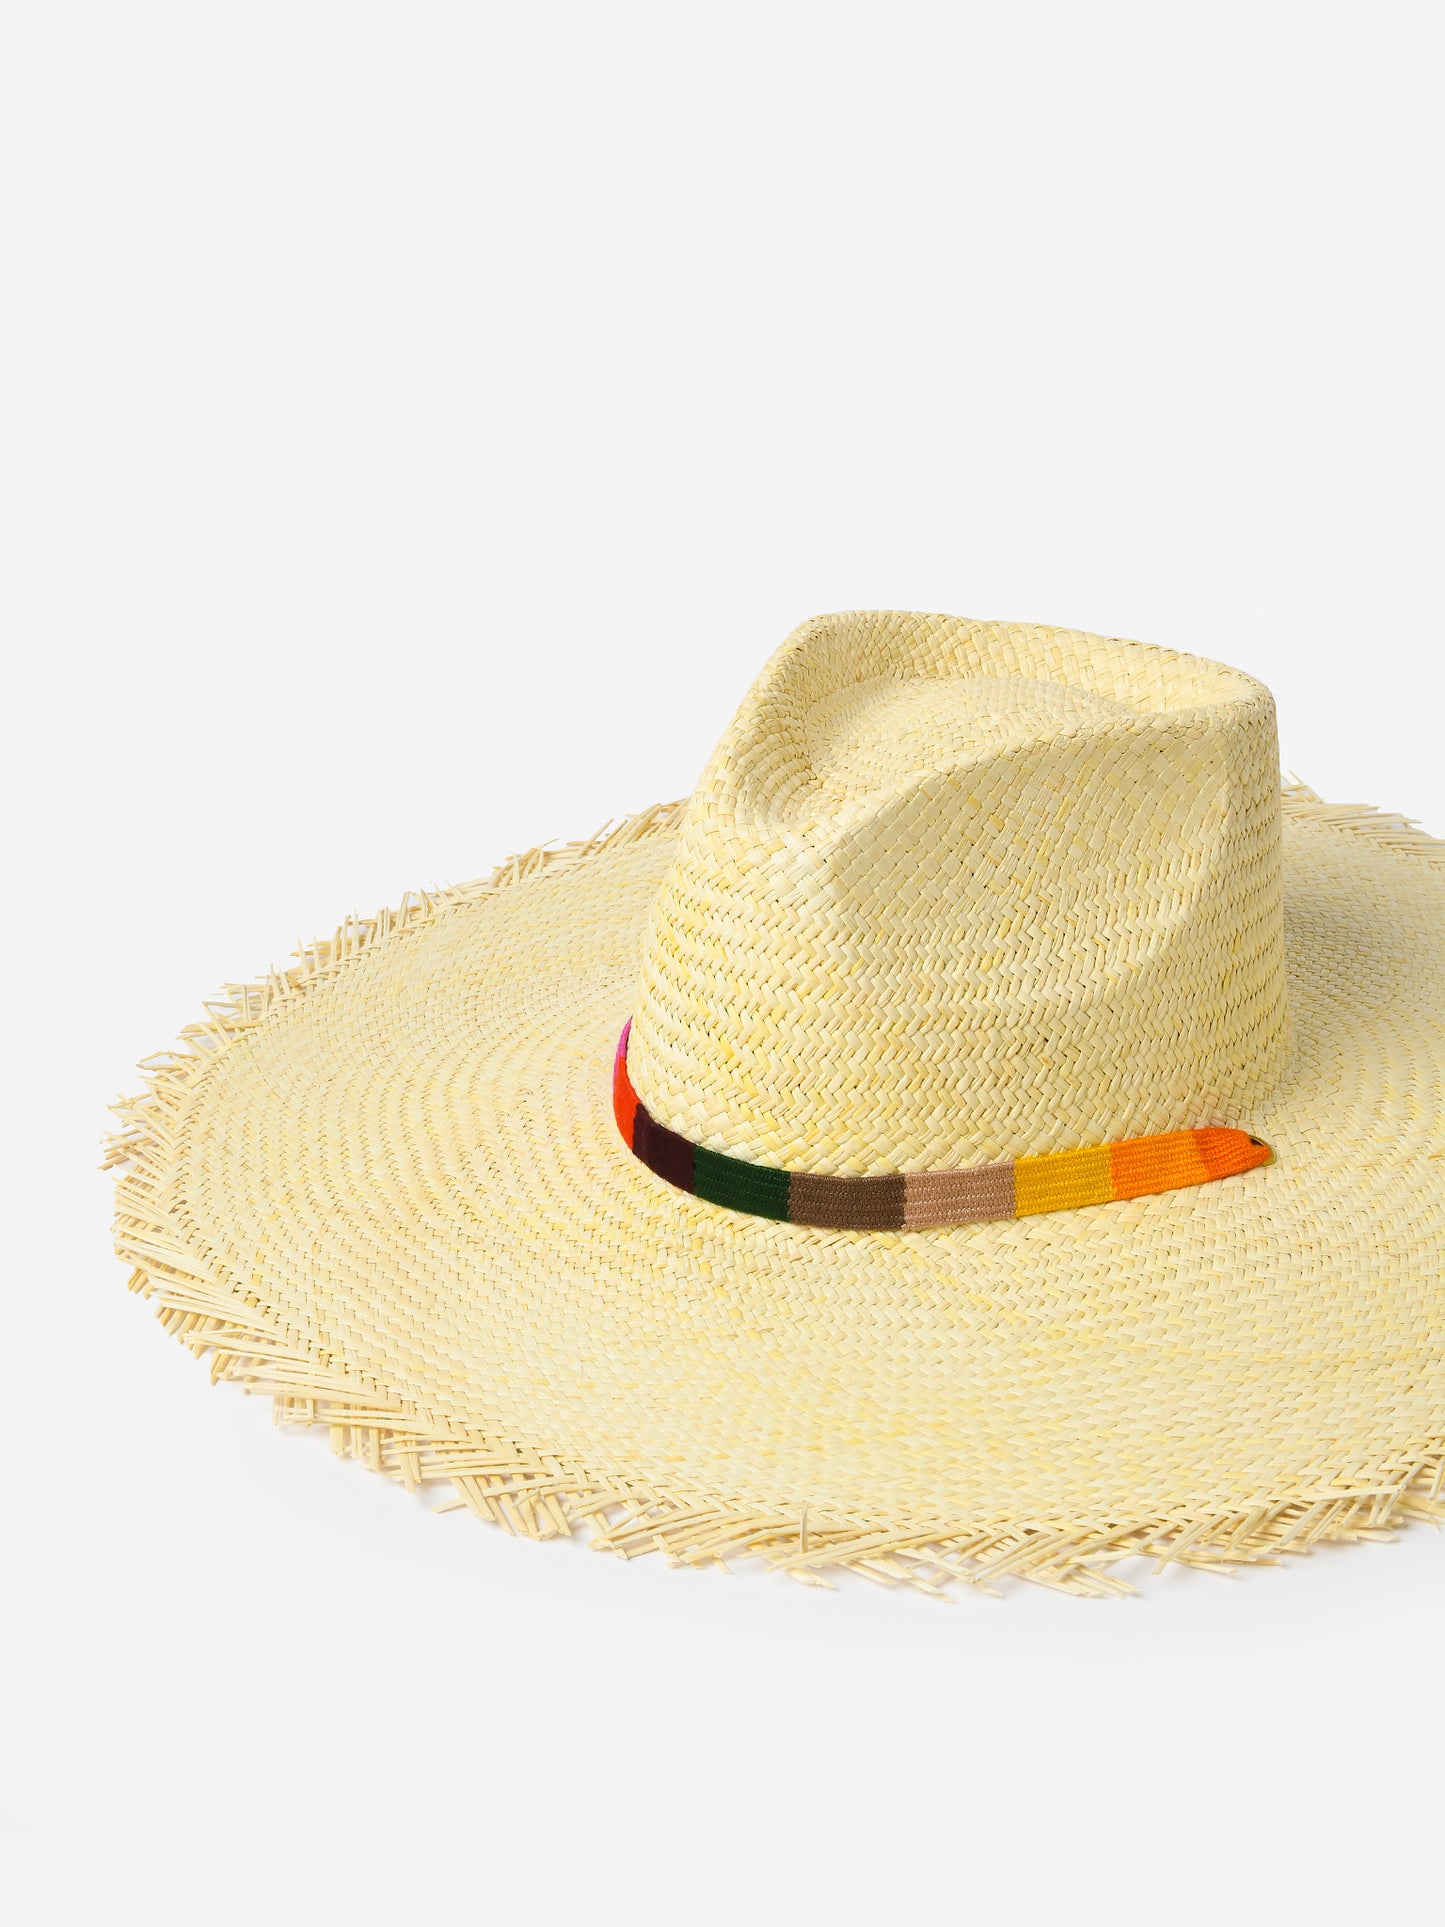 Sunshine Tienda Women's Rosita Wide Brim Fringe Palm Hat